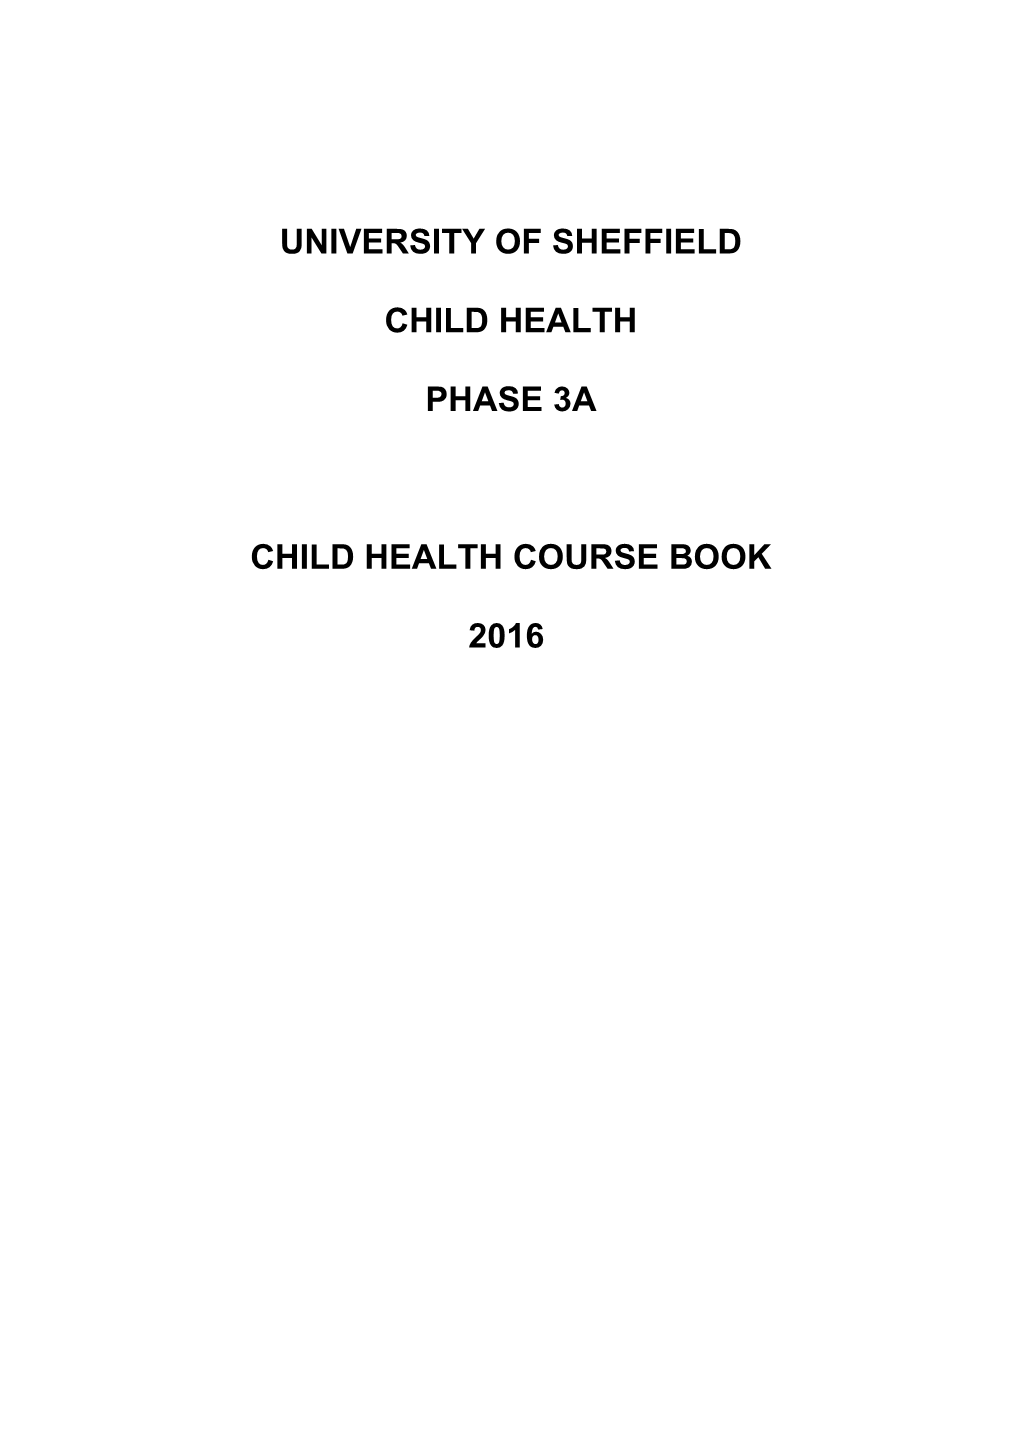 Child Health Course Book